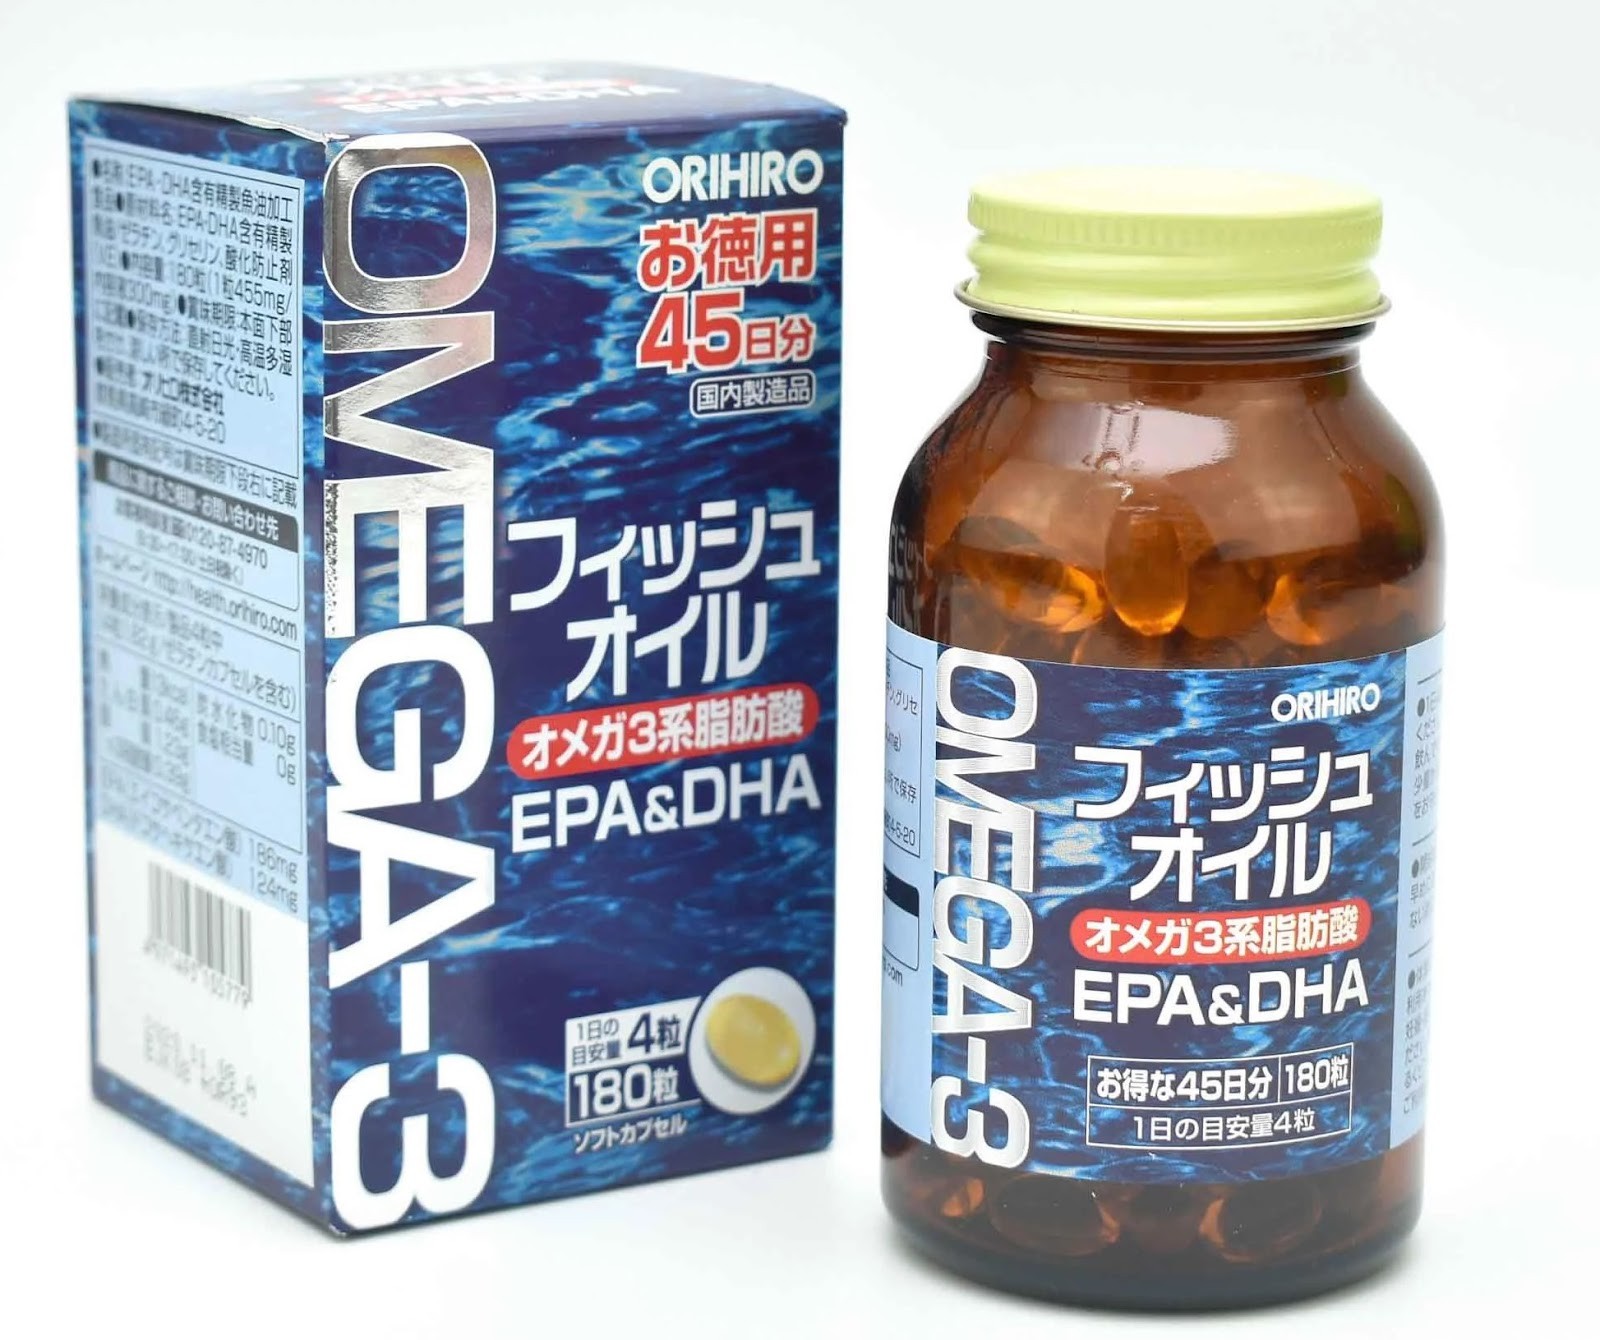 Dầu cá Omega 3 Orihiro là viên uống hỗ trợ sức khỏe đến từ Nhật Bản